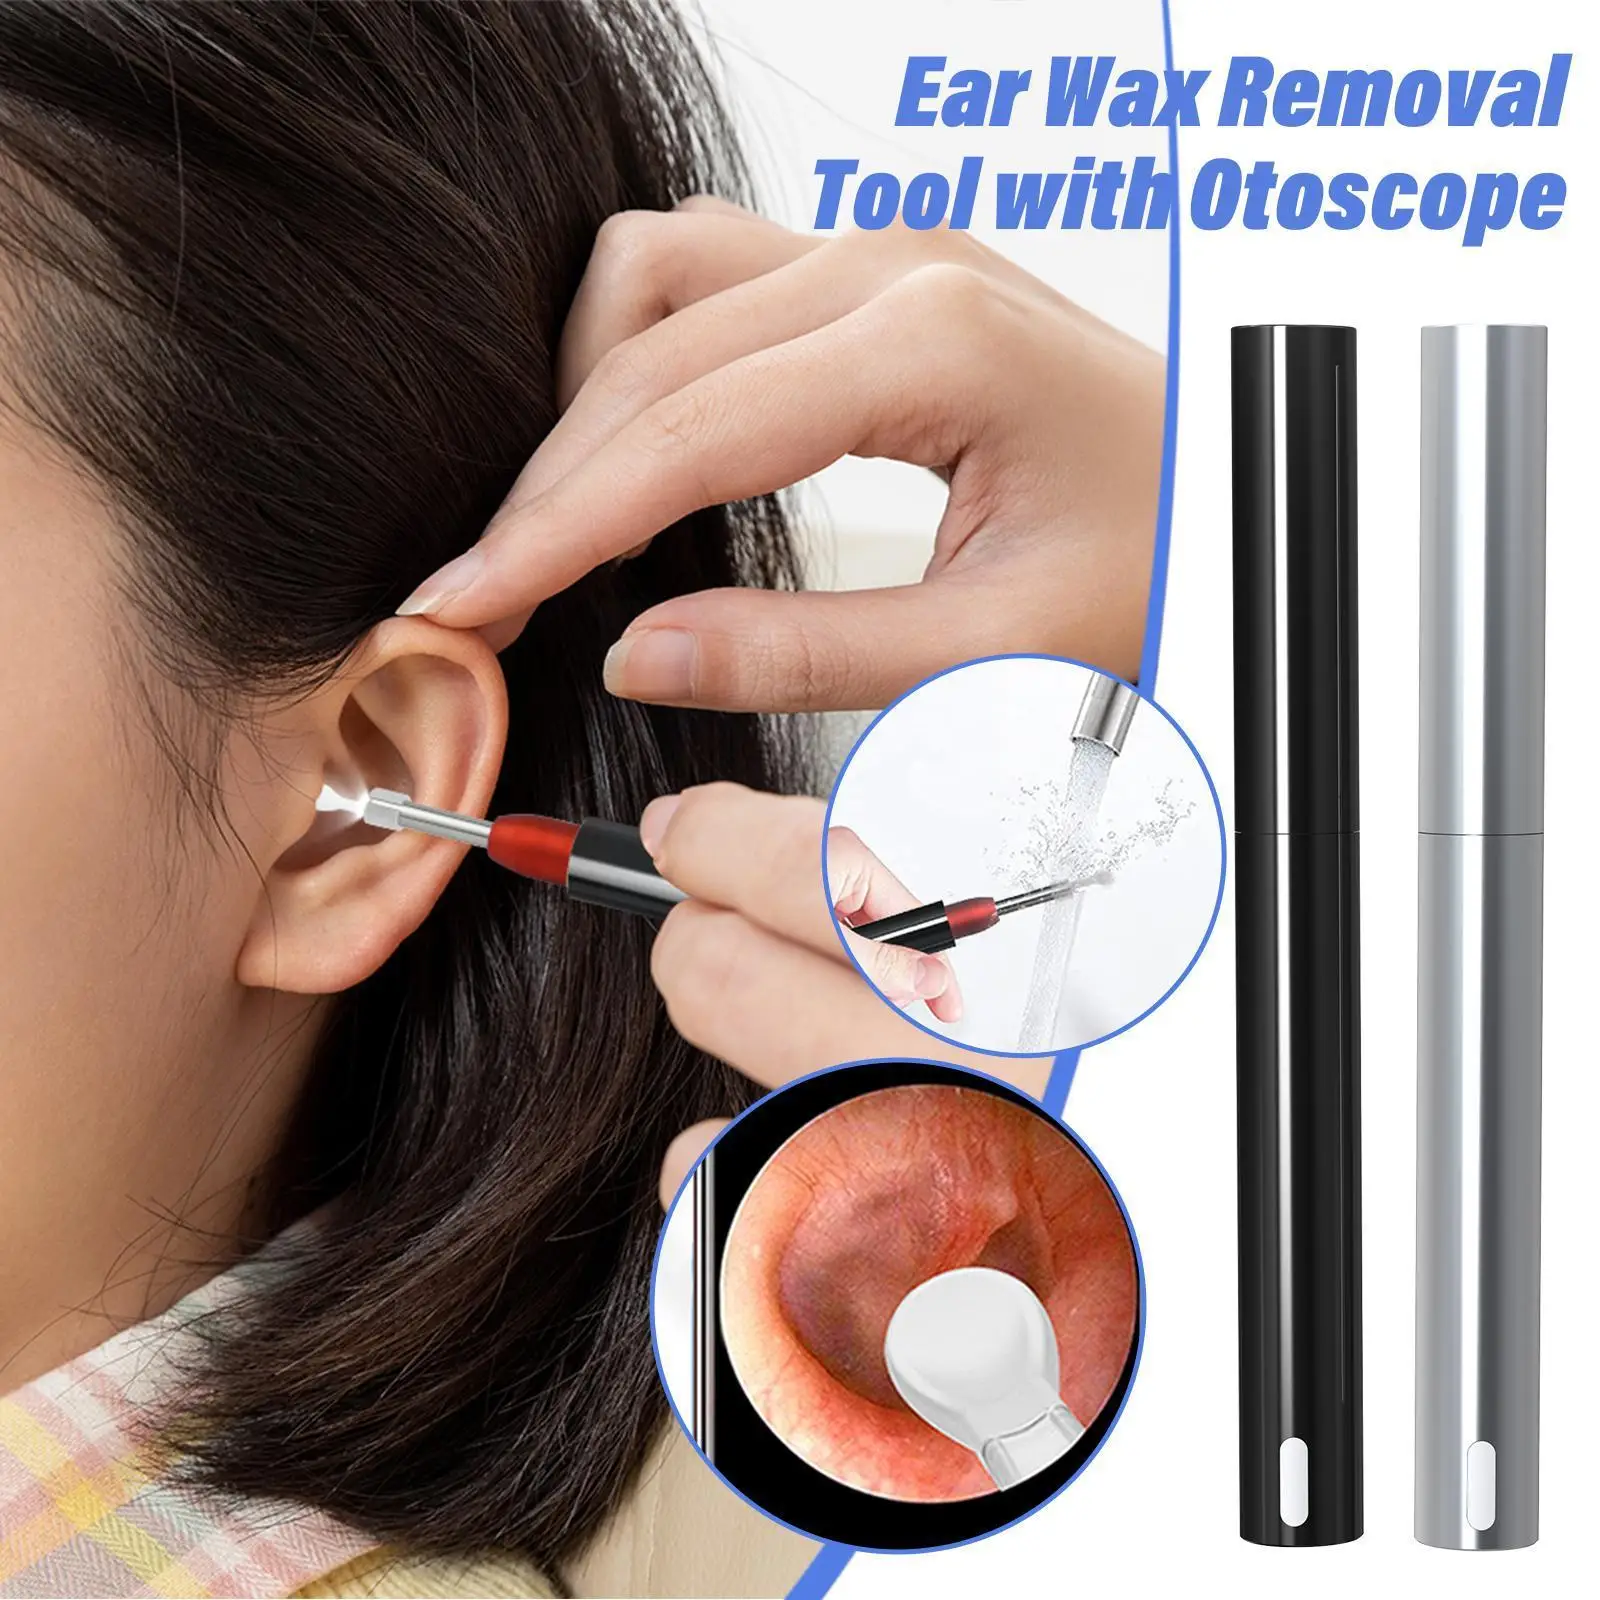 Uus Smart Visuaalne Kõrva Puhastaja Kõrva Endoscope Earpick Picker Tool Ear Ear Ear Earwax Eemaldamise Vaha Otoscope Kaamera Eemaldaja Puhas S1L7